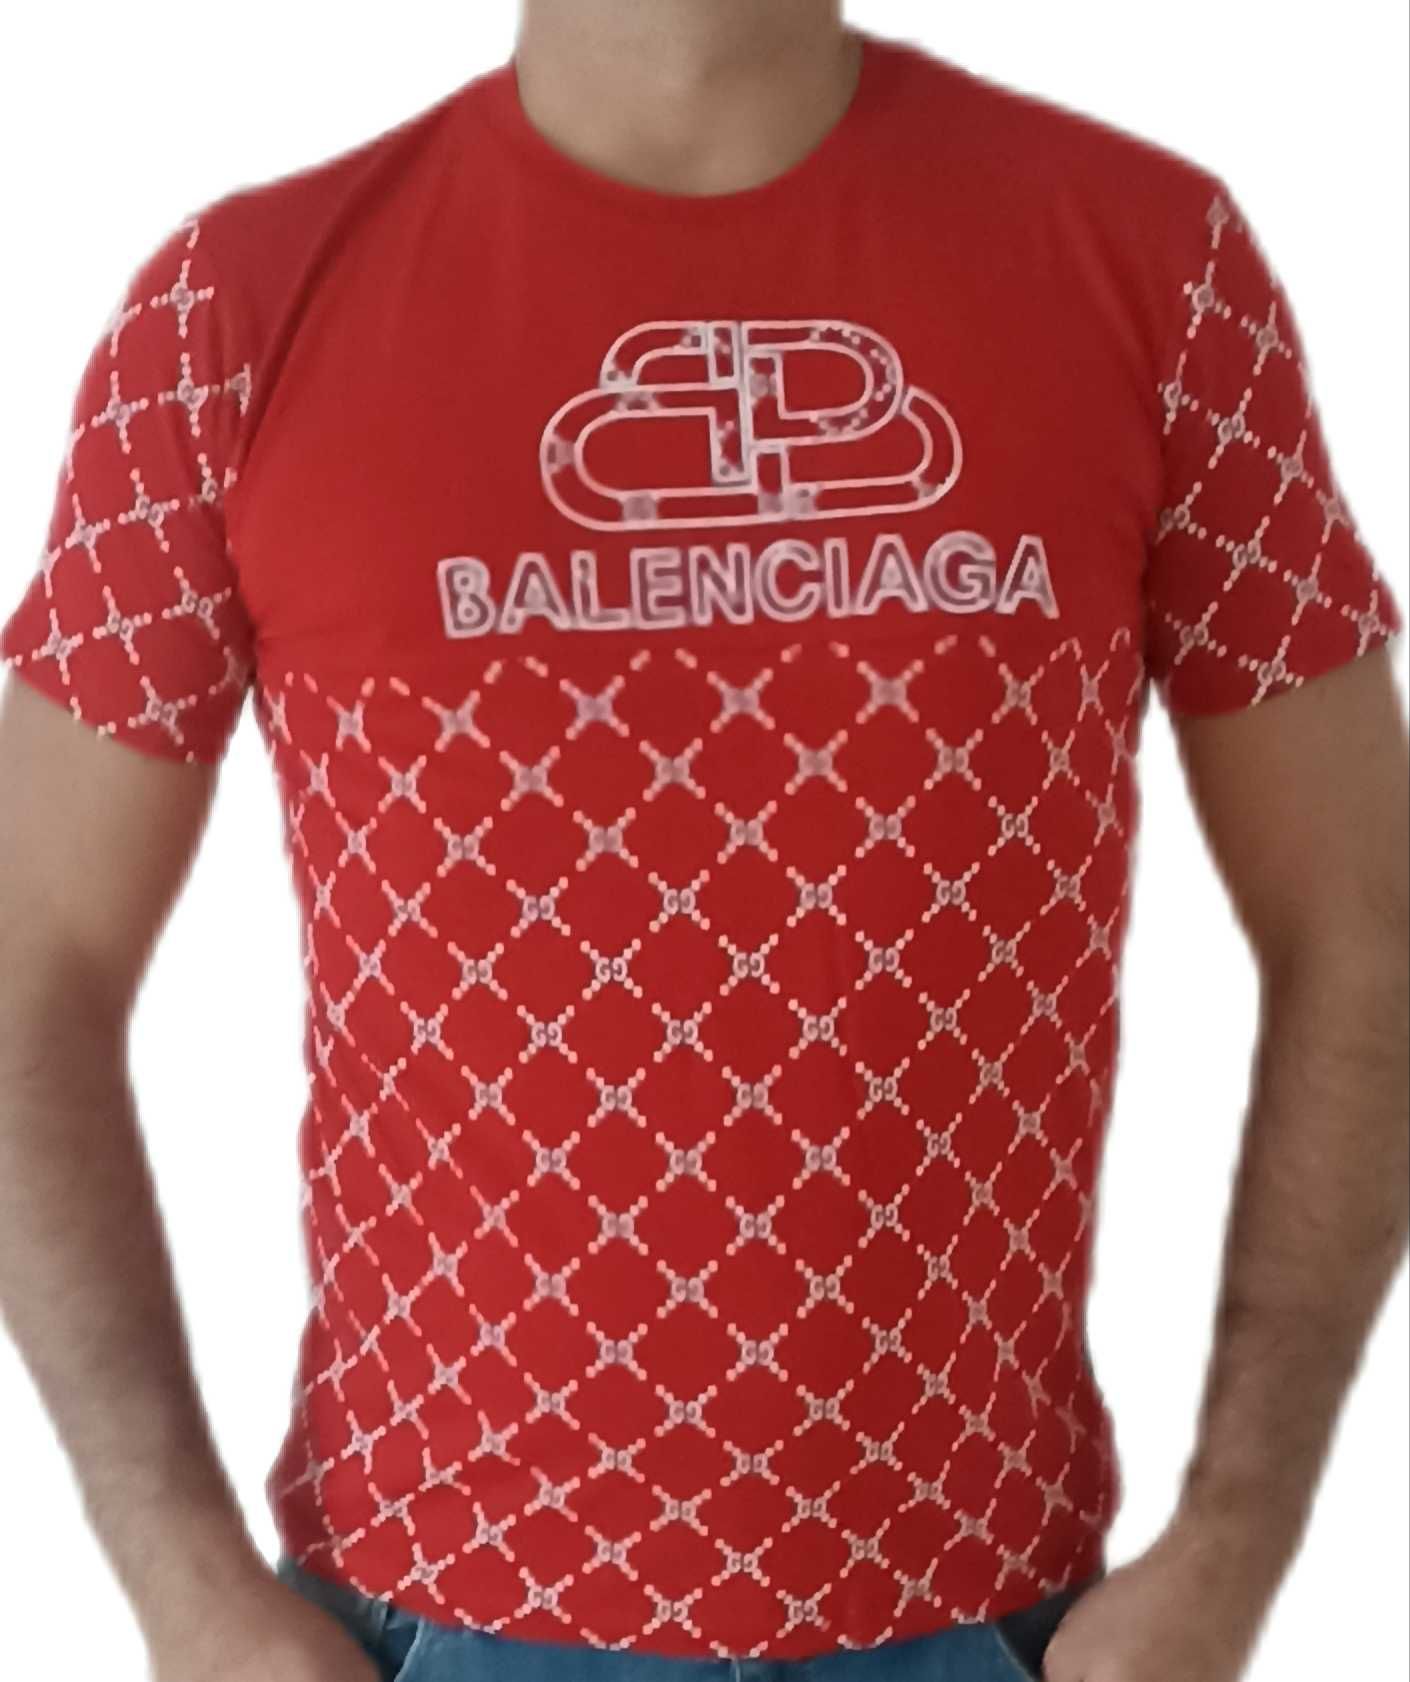 BALENCIAGA T-SHIRT koszulka czerwona r. M